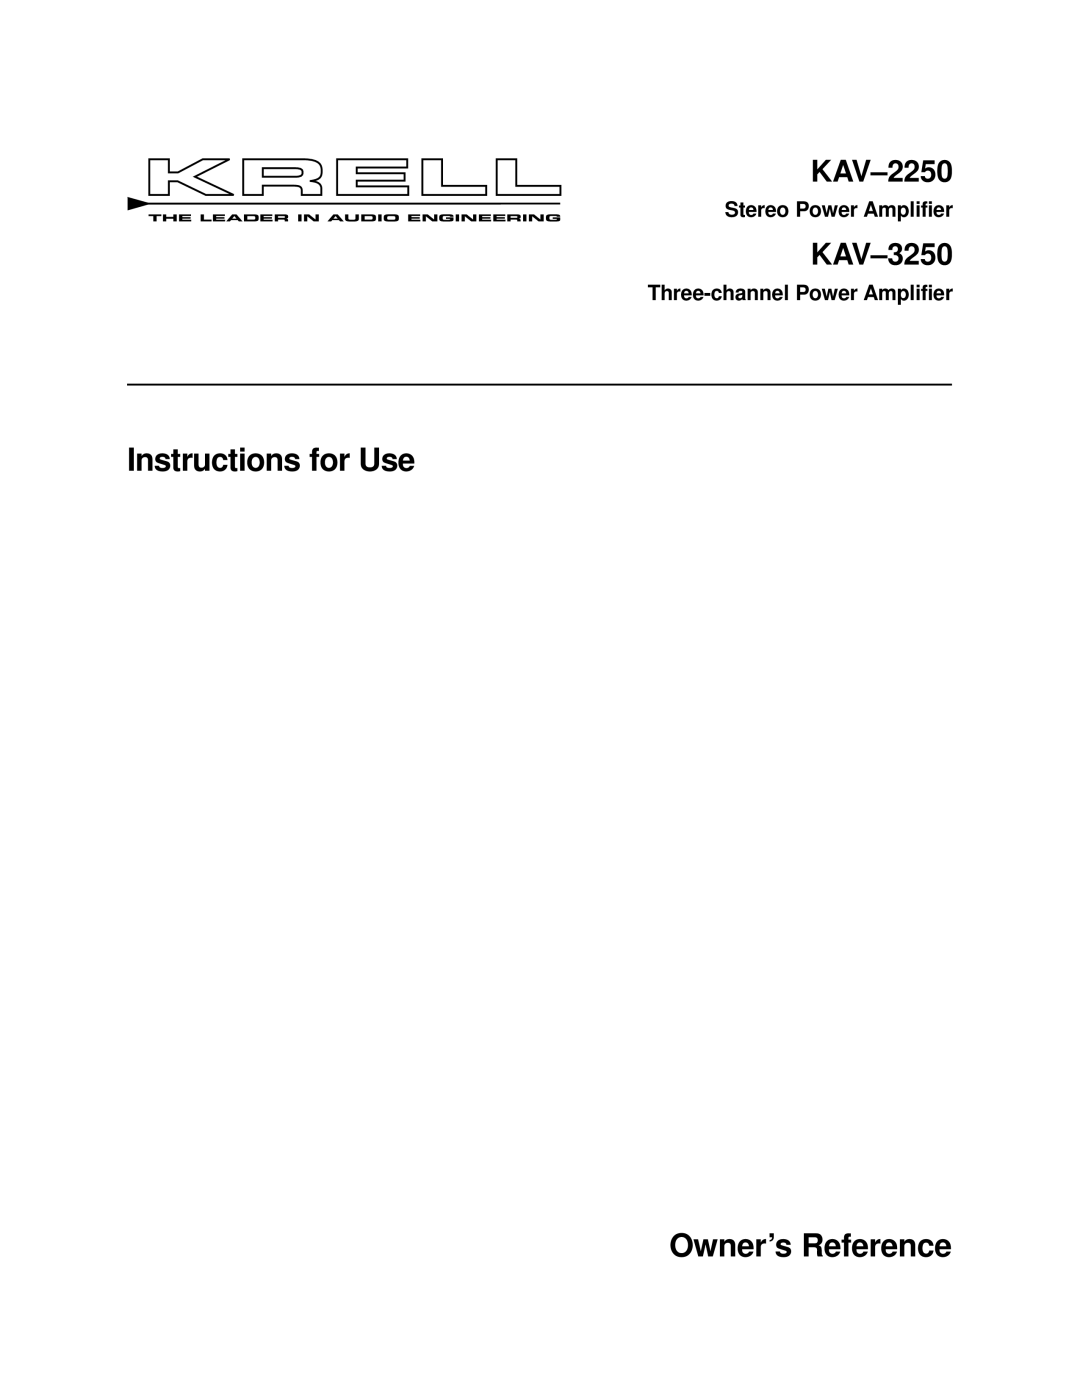 Krell Industries KAV 3250 manual Instructions for Use Owner’s Reference, KAV-2250, KAV-3250, Stereo Power Amplifier 